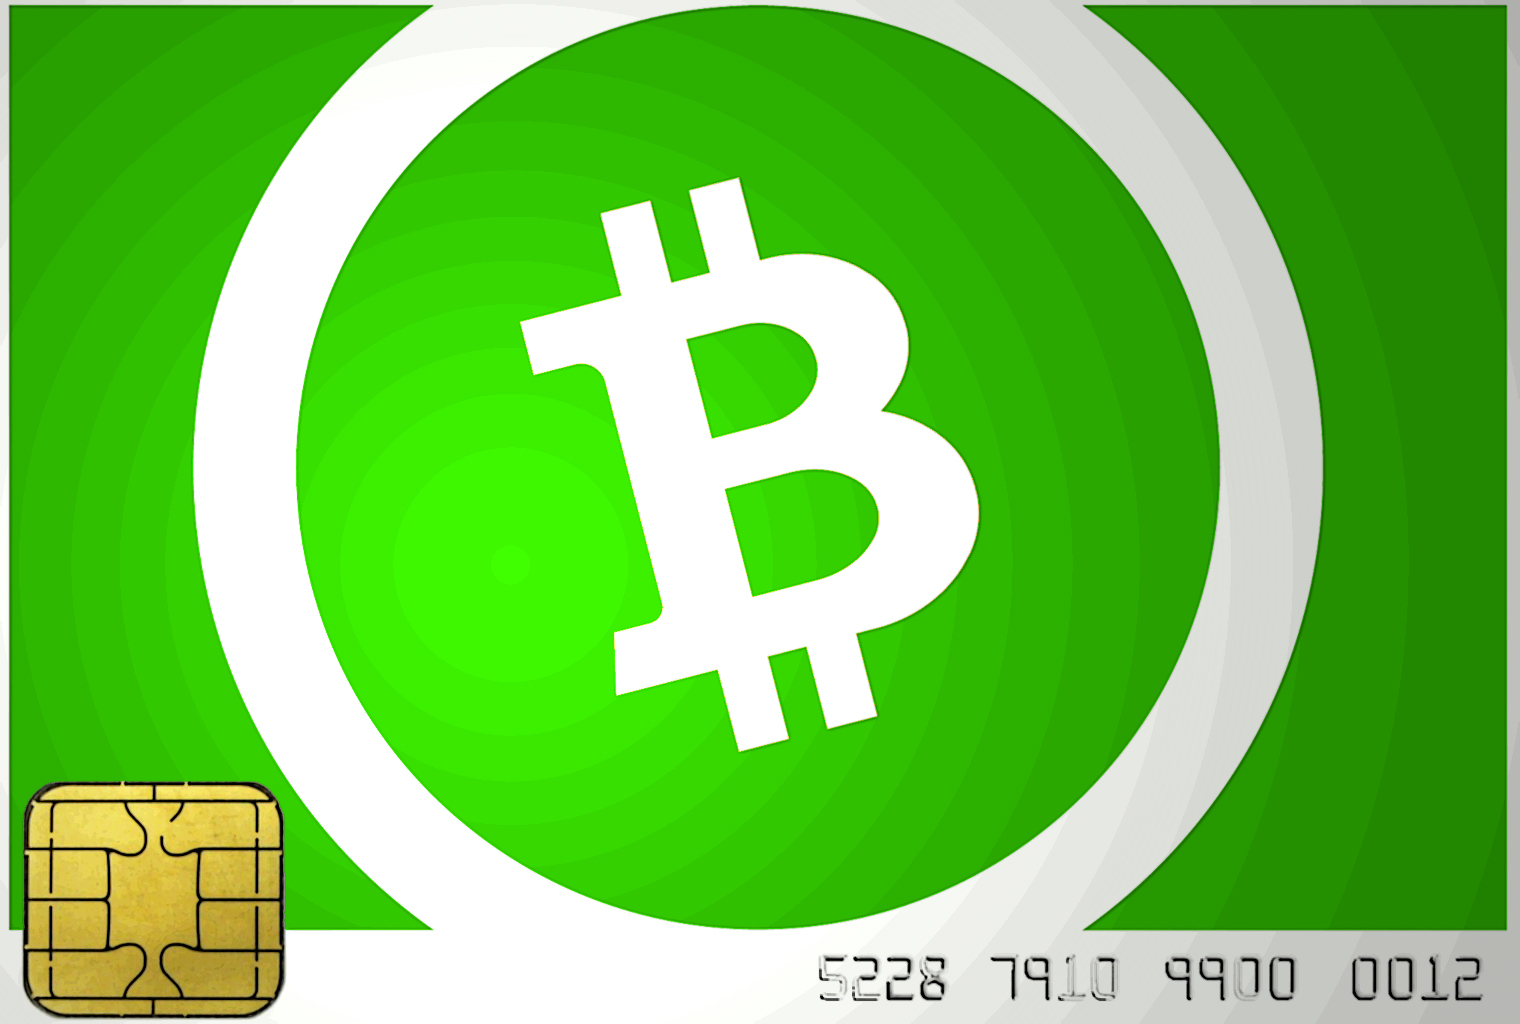  Tarjeta inteligente de demostración de desarrolladores que produce firmas en efectivo de Bitcoin 